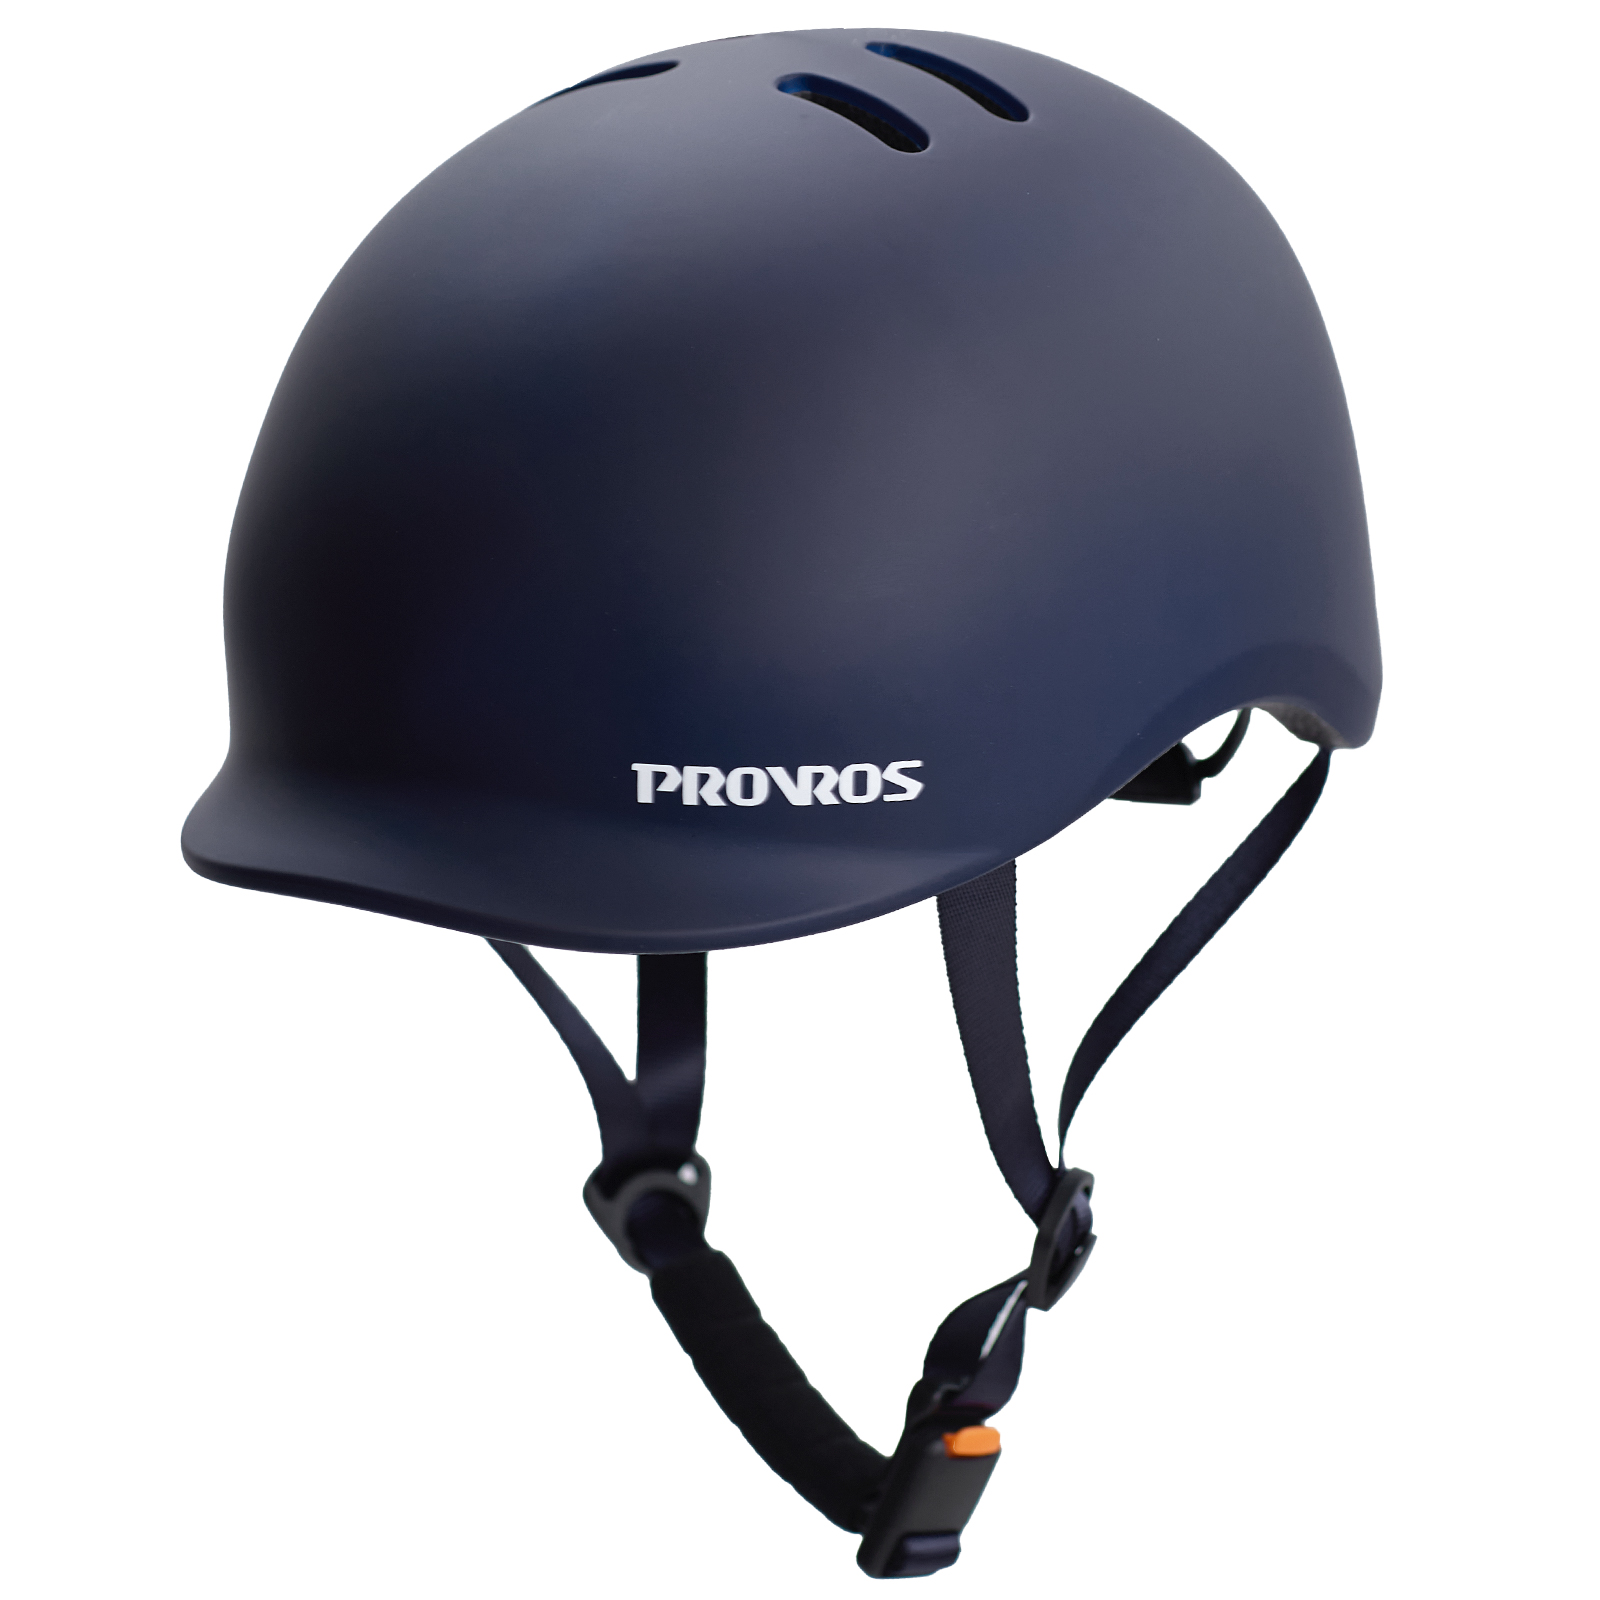 PROVROS ヘルメット 自転車用 子供 大人 兼用 SG規格 認証マーク マグネットバックル 超...